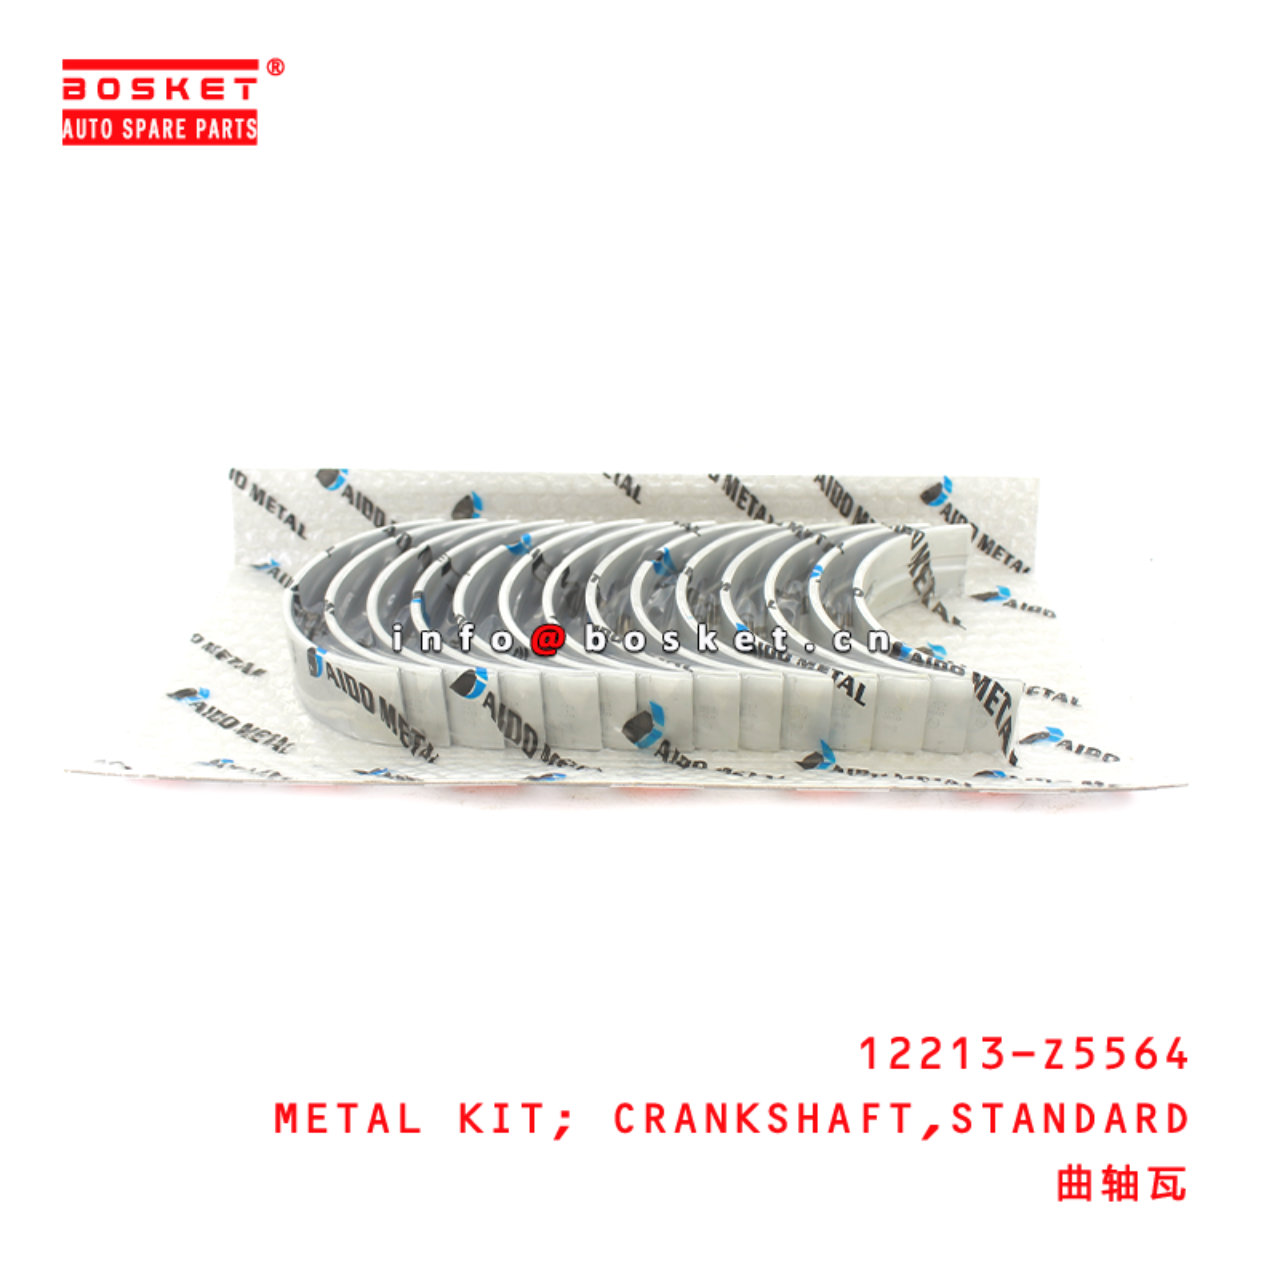 12117-Z5606 Standard Connecting Rod Metal Set Suitable for ISUZU UD-NISSAN FE6TC-24V FE6B-12V FE6T-1